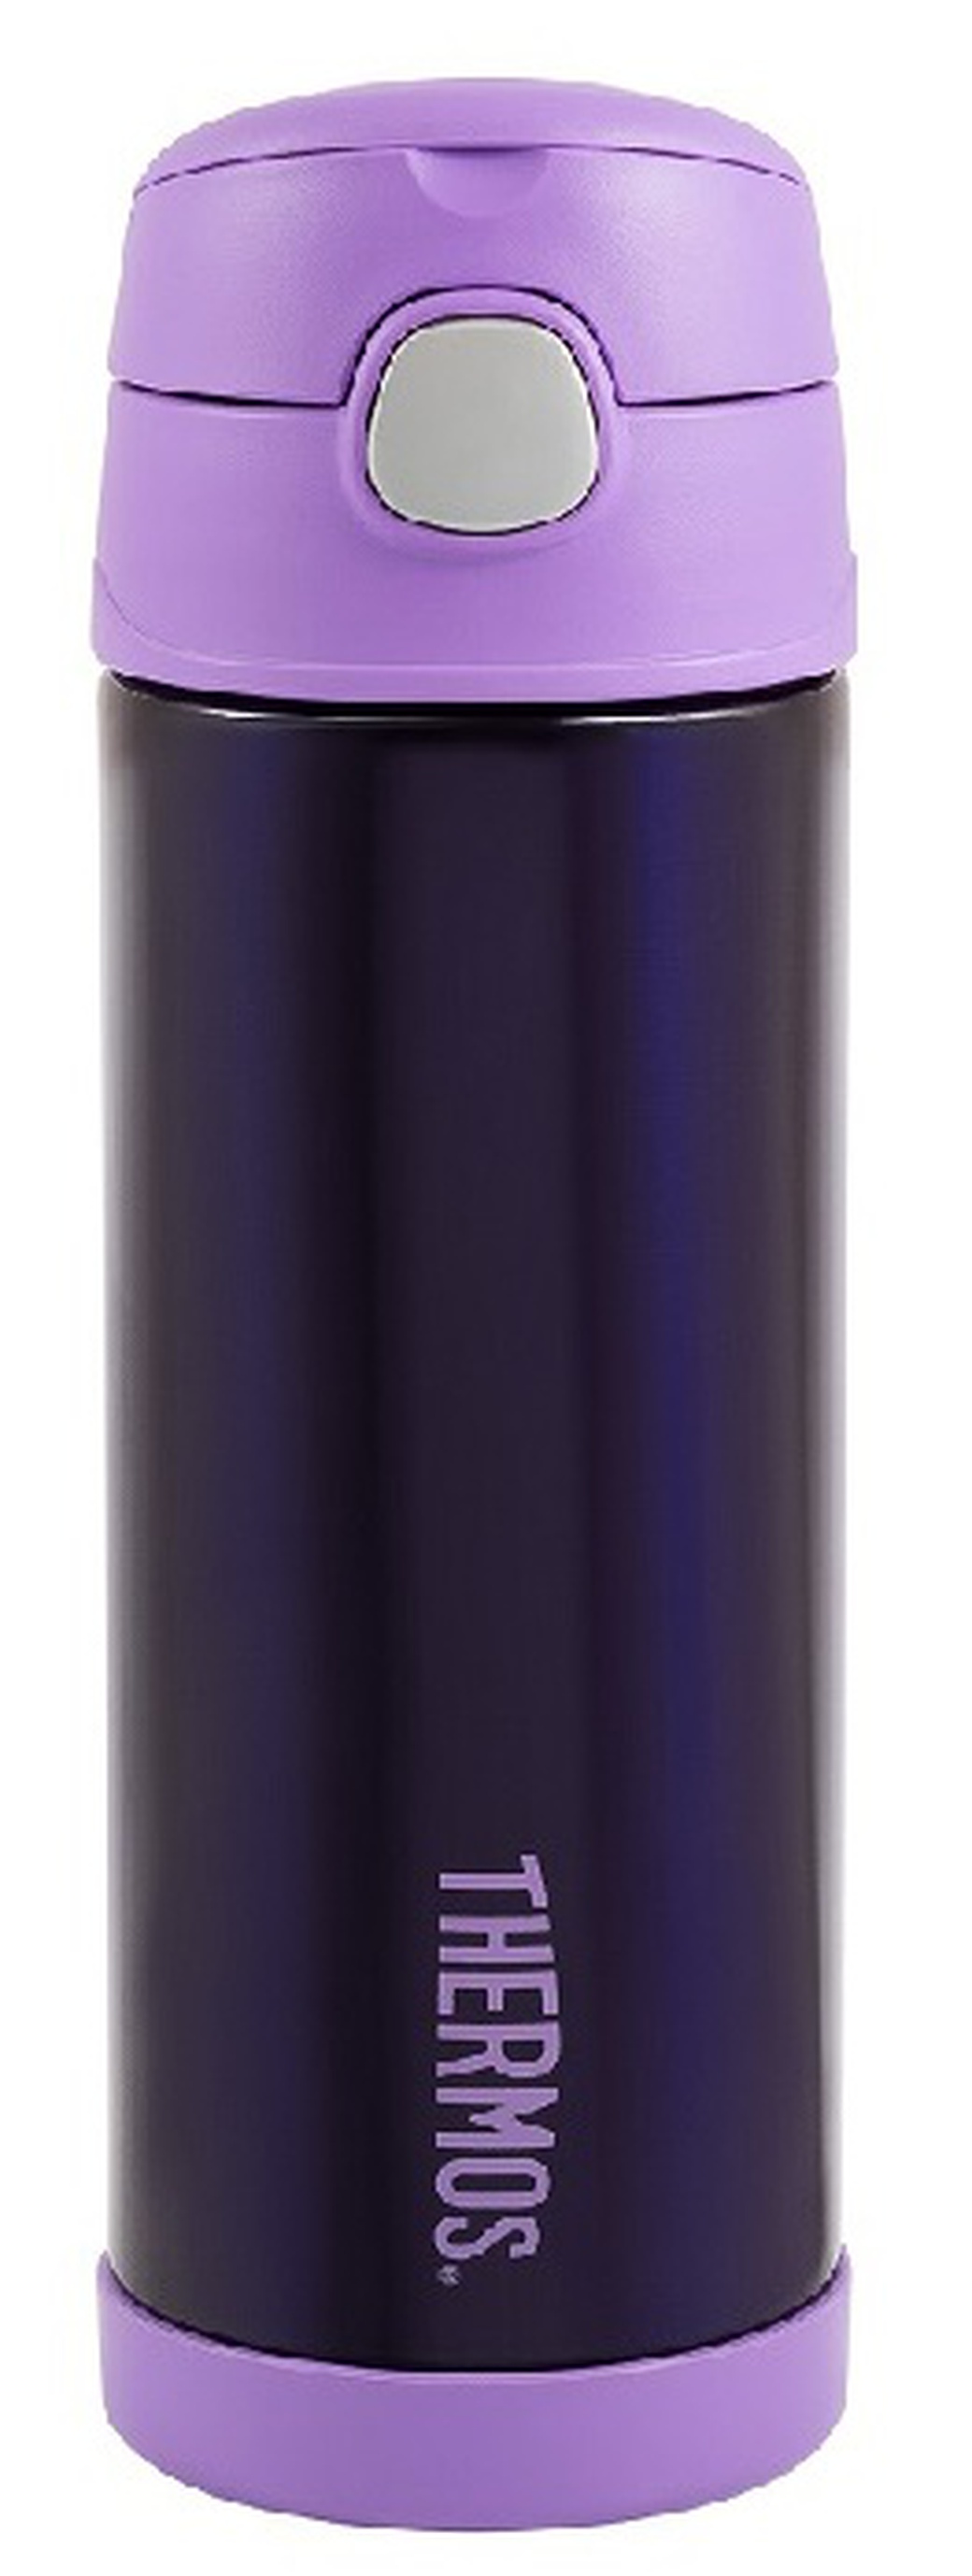 Детский термос Thermos F4023PL Stainless Steel (0,47 литра), фиолетовый фото